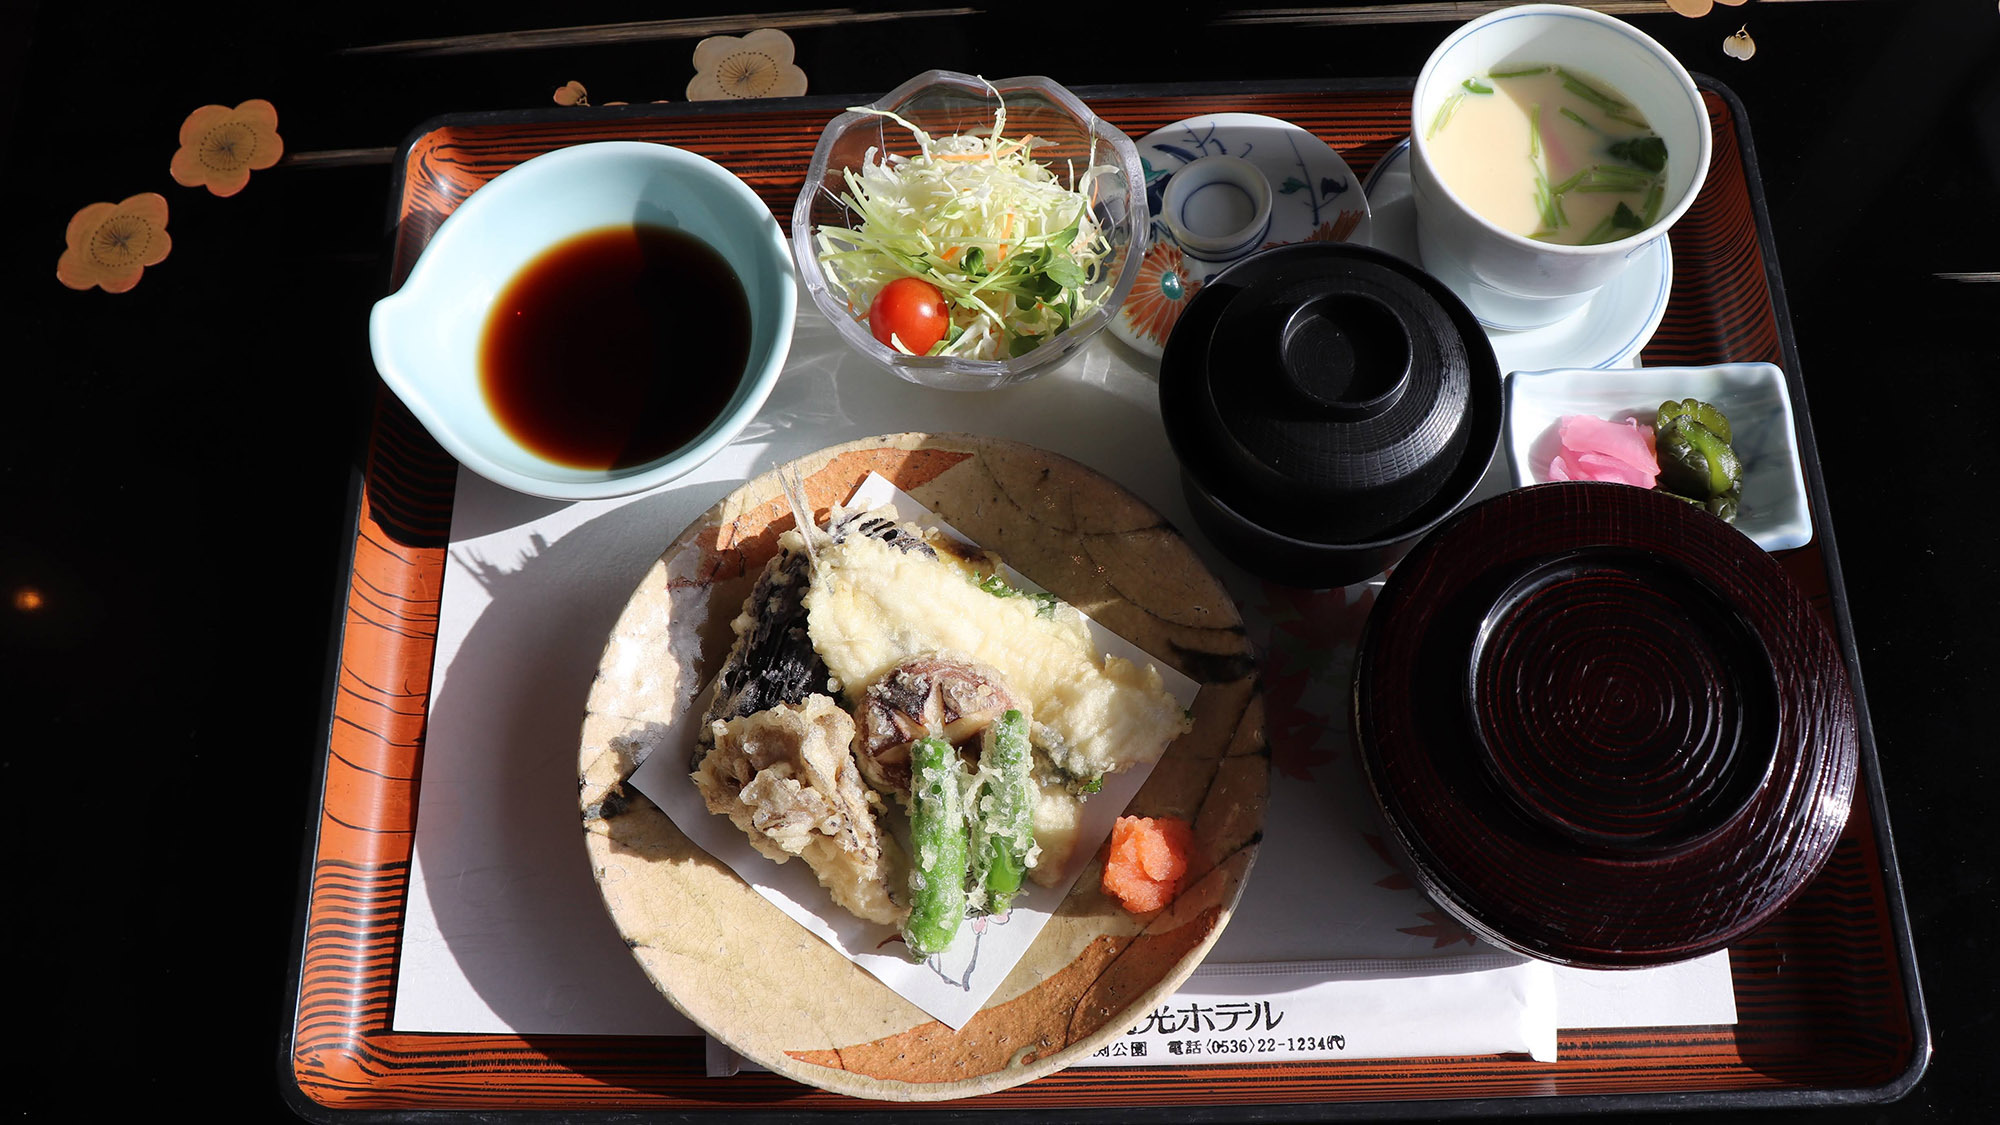 ・【定食一例『天ぷら定食』】素泊りや朝食のみのお客様もお食事処で別途ご注文が可能です